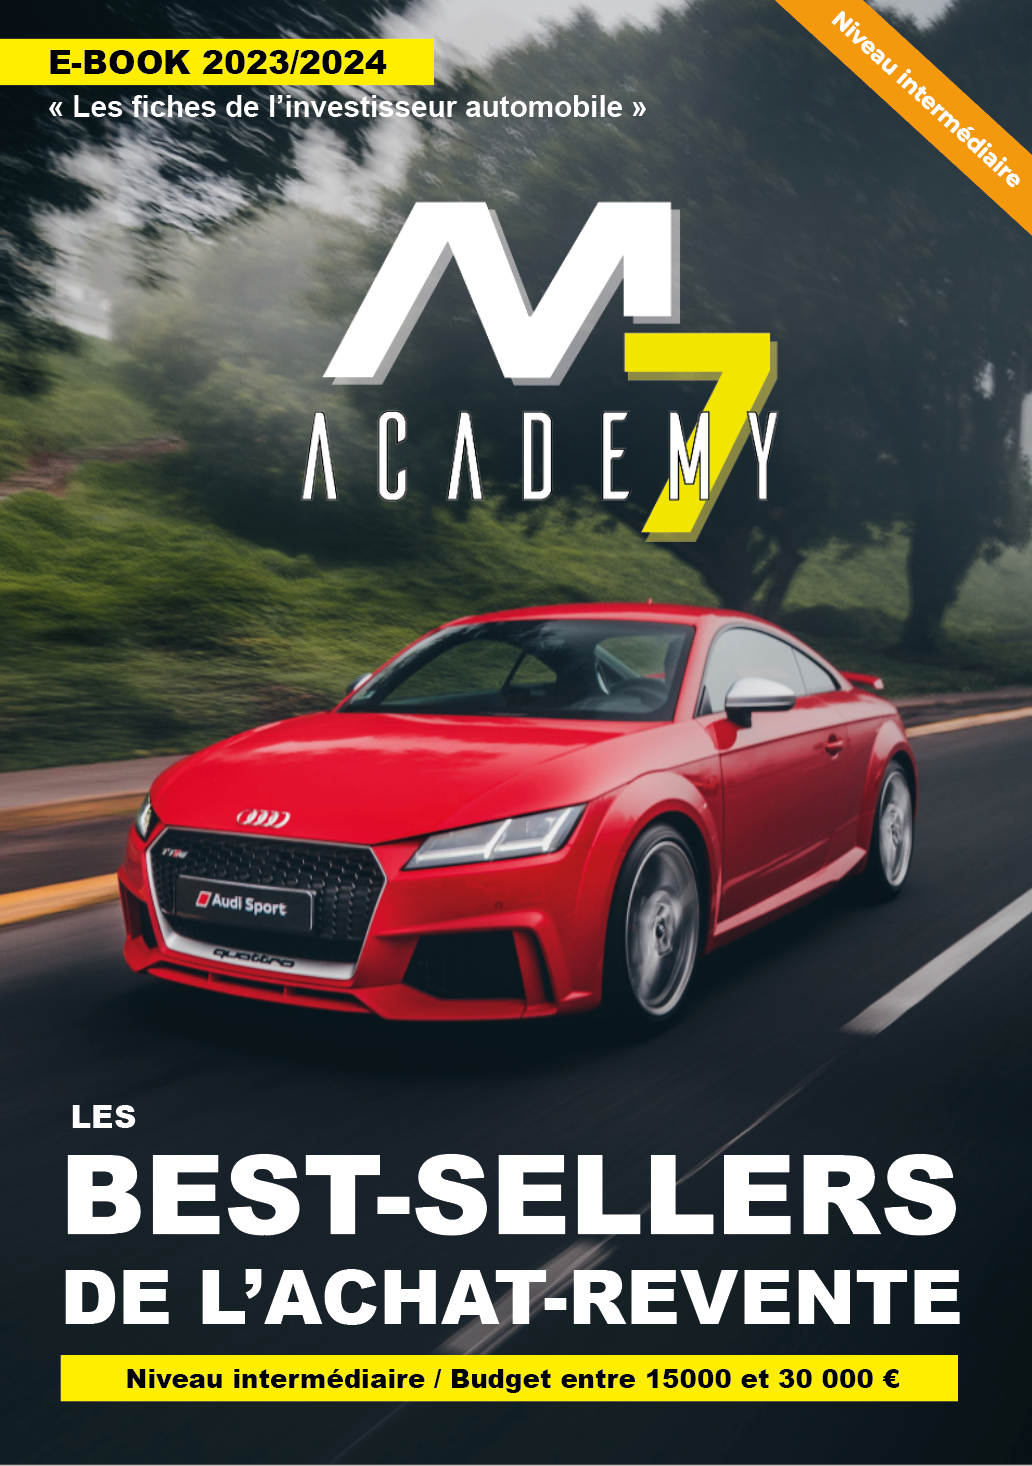 E-BOOK "Les fiches de l'investisseur automobile" : Les best-sellers de l'achat/revente (Intermédiaire/De 15000€ à 30000€)